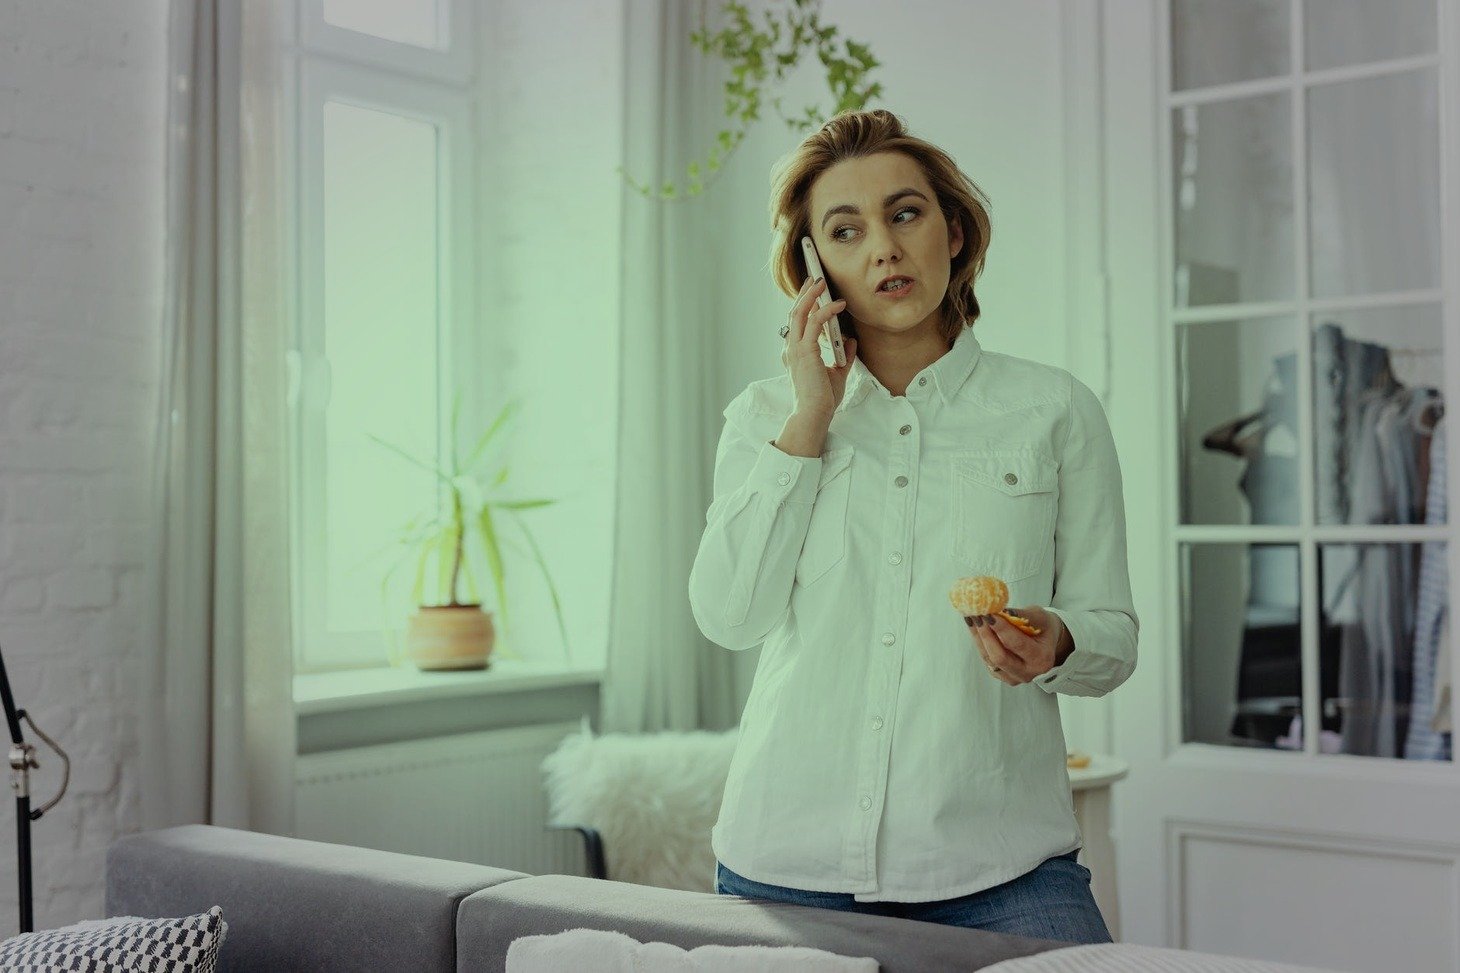 Mujer joven sostiene una conversación telefónica mientras come una fruta. | Foto: Pexels